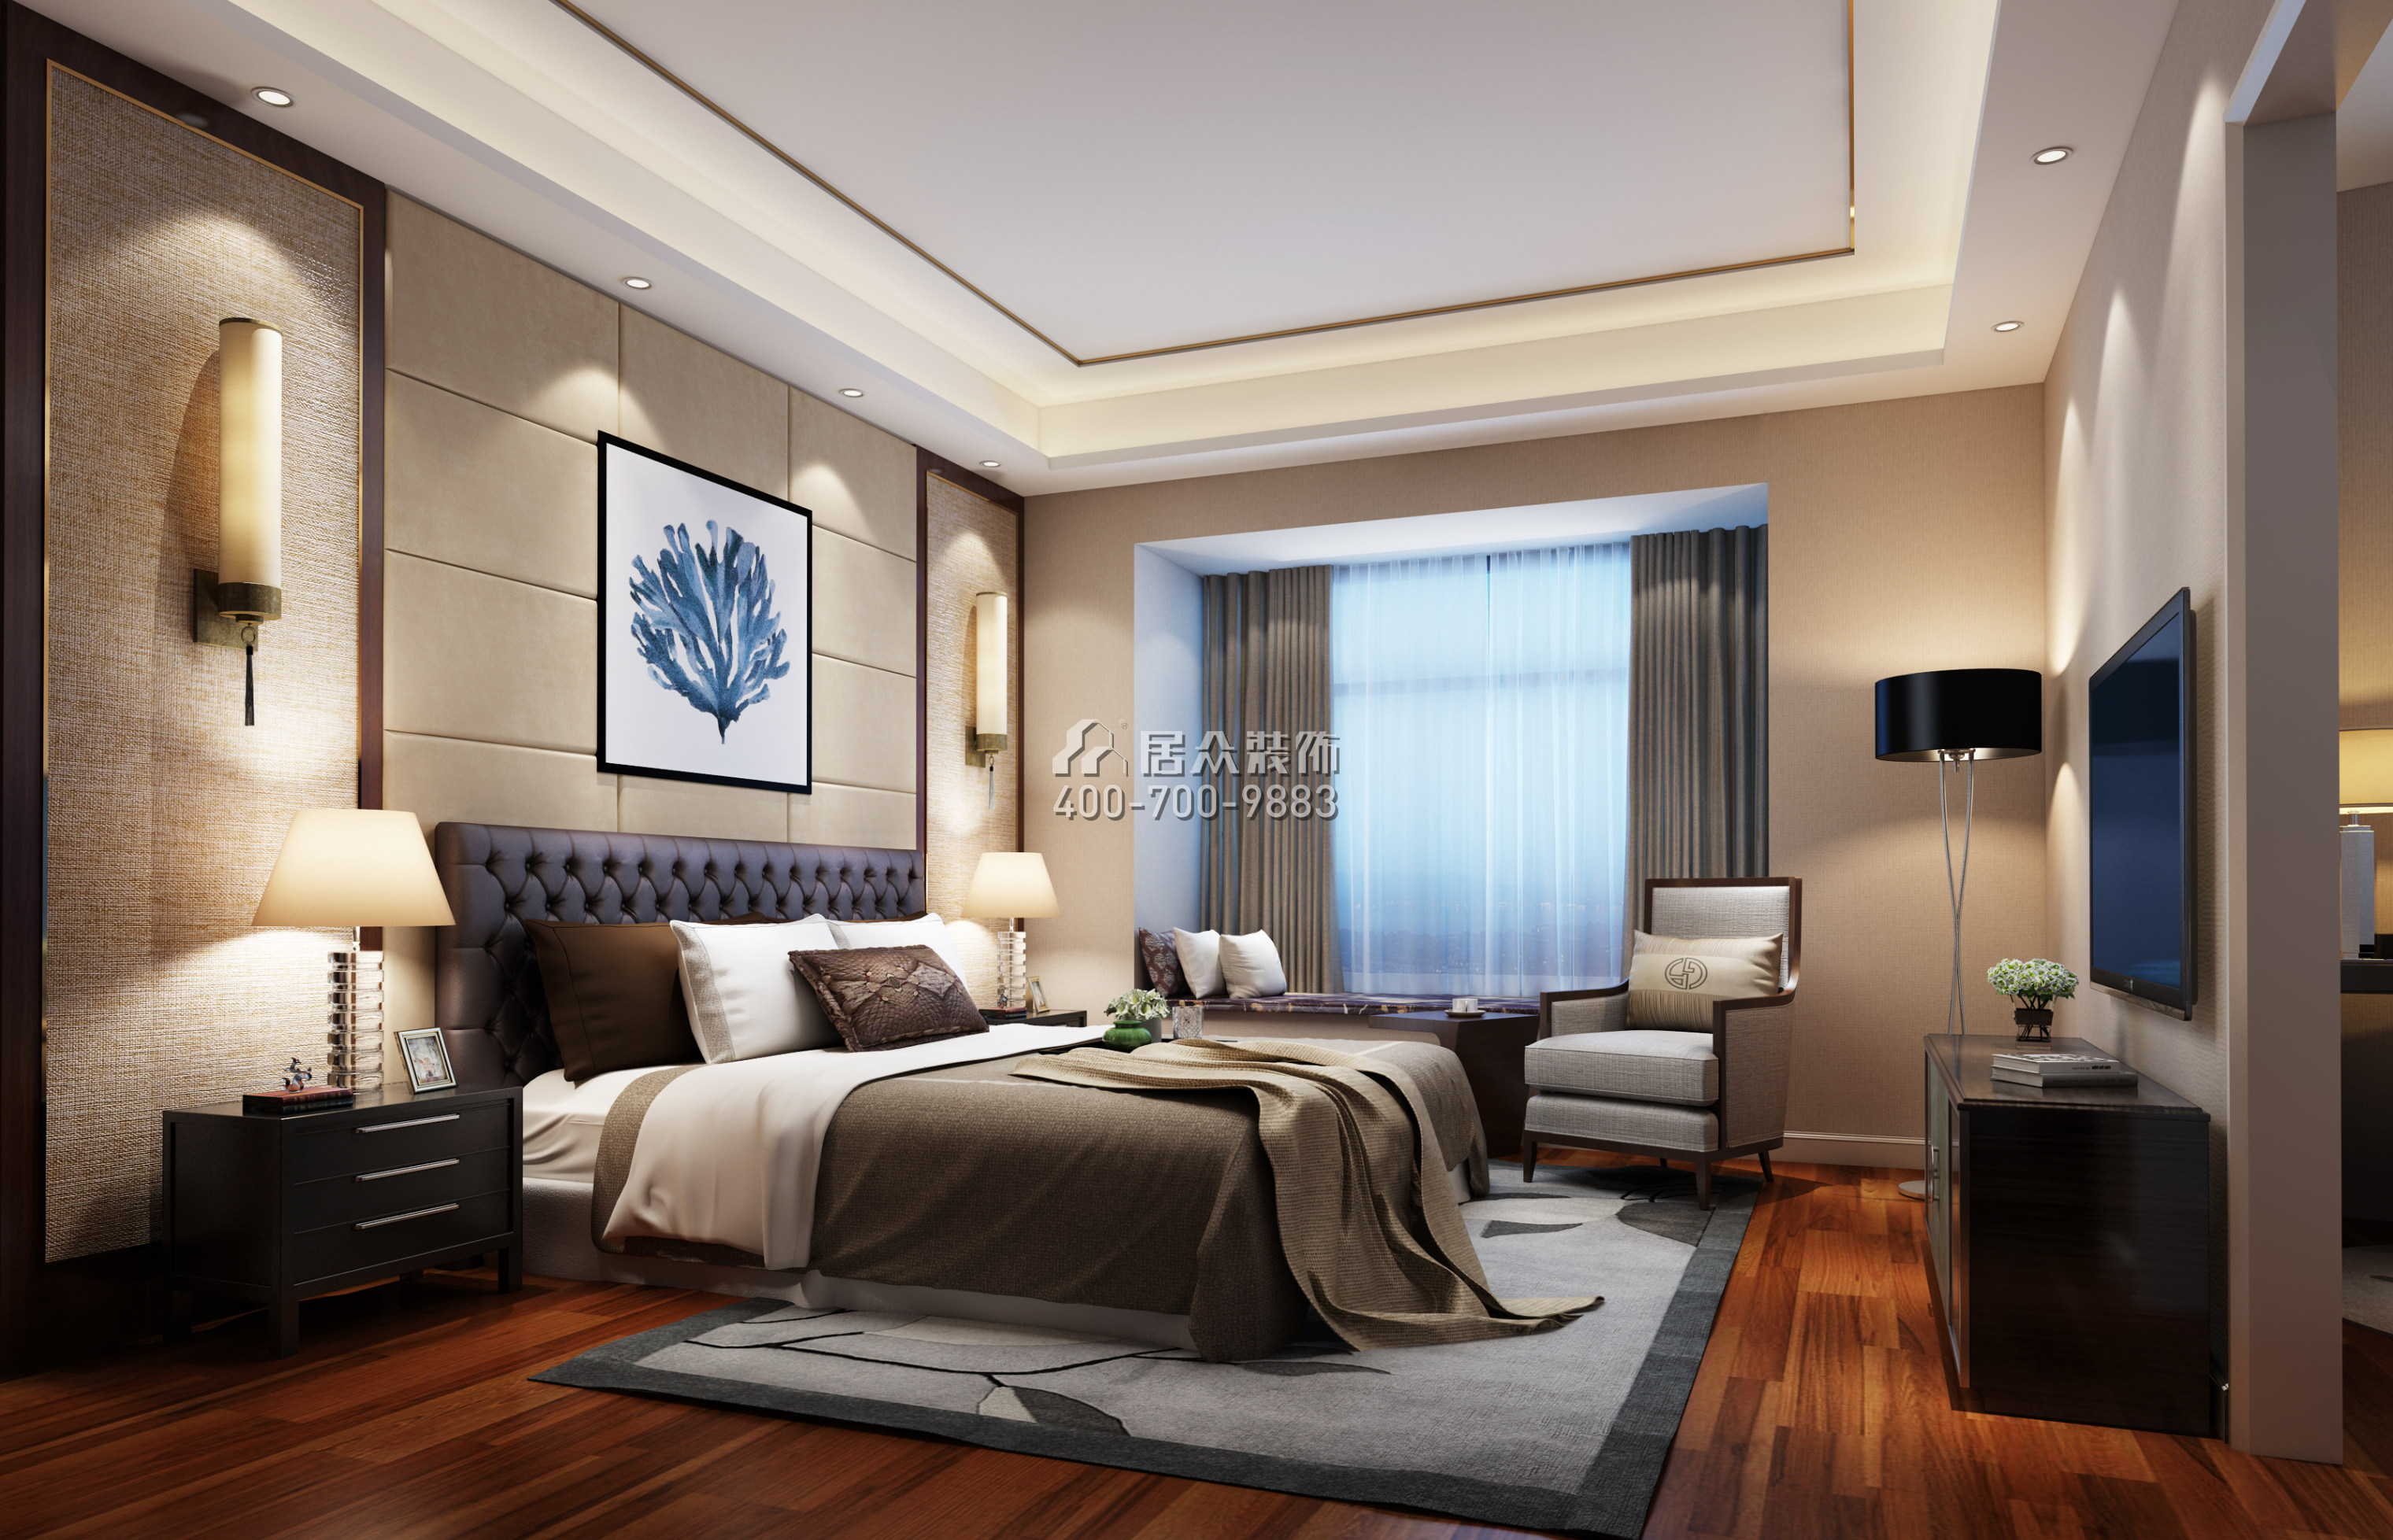 蔚蓝海岸三期120平方米中式风格平层户型卧室装修效果图